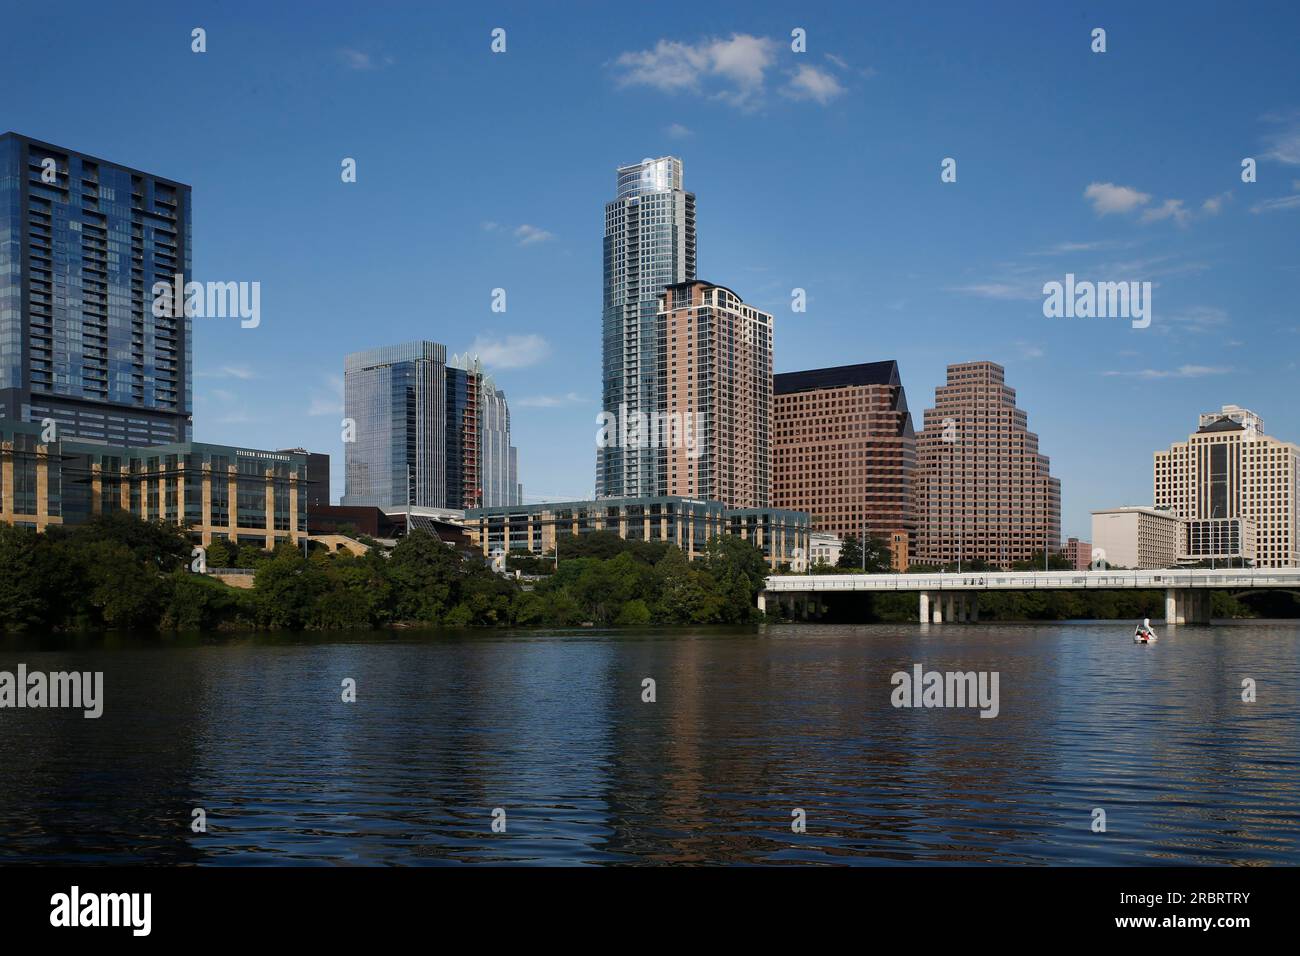 Austin è la capitale del Texas e il capoluogo della contea di Travis. Situato nel Texas centrale e nel sud-ovest americano, è l'undicesima città più popolosa Foto Stock